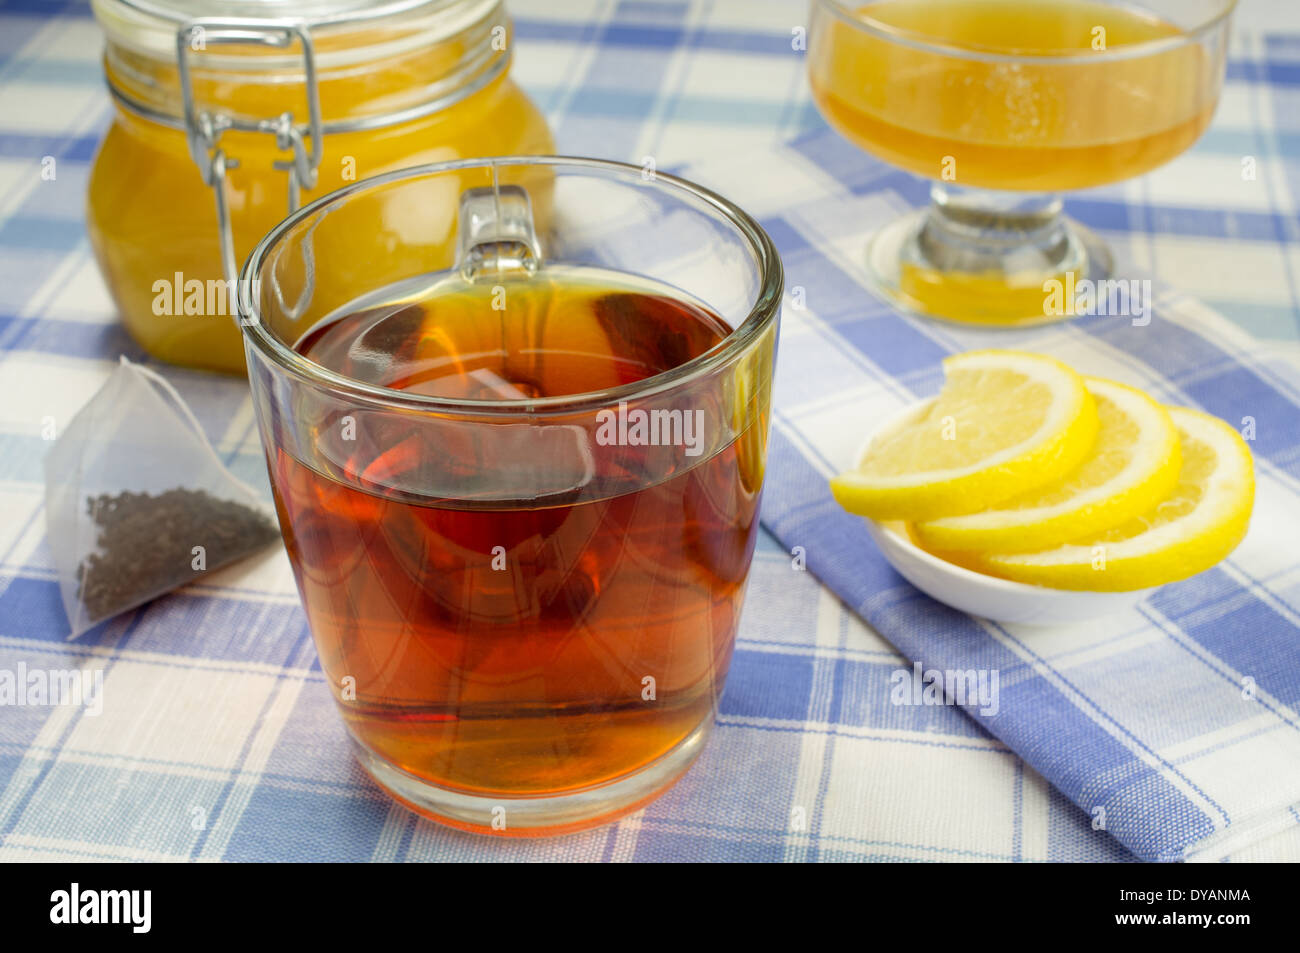 Tazza di tè con un vasetto di miele e le fette di limone sulla tavola. Pyramid sacchetto da tè nelle vicinanze. Foto Stock